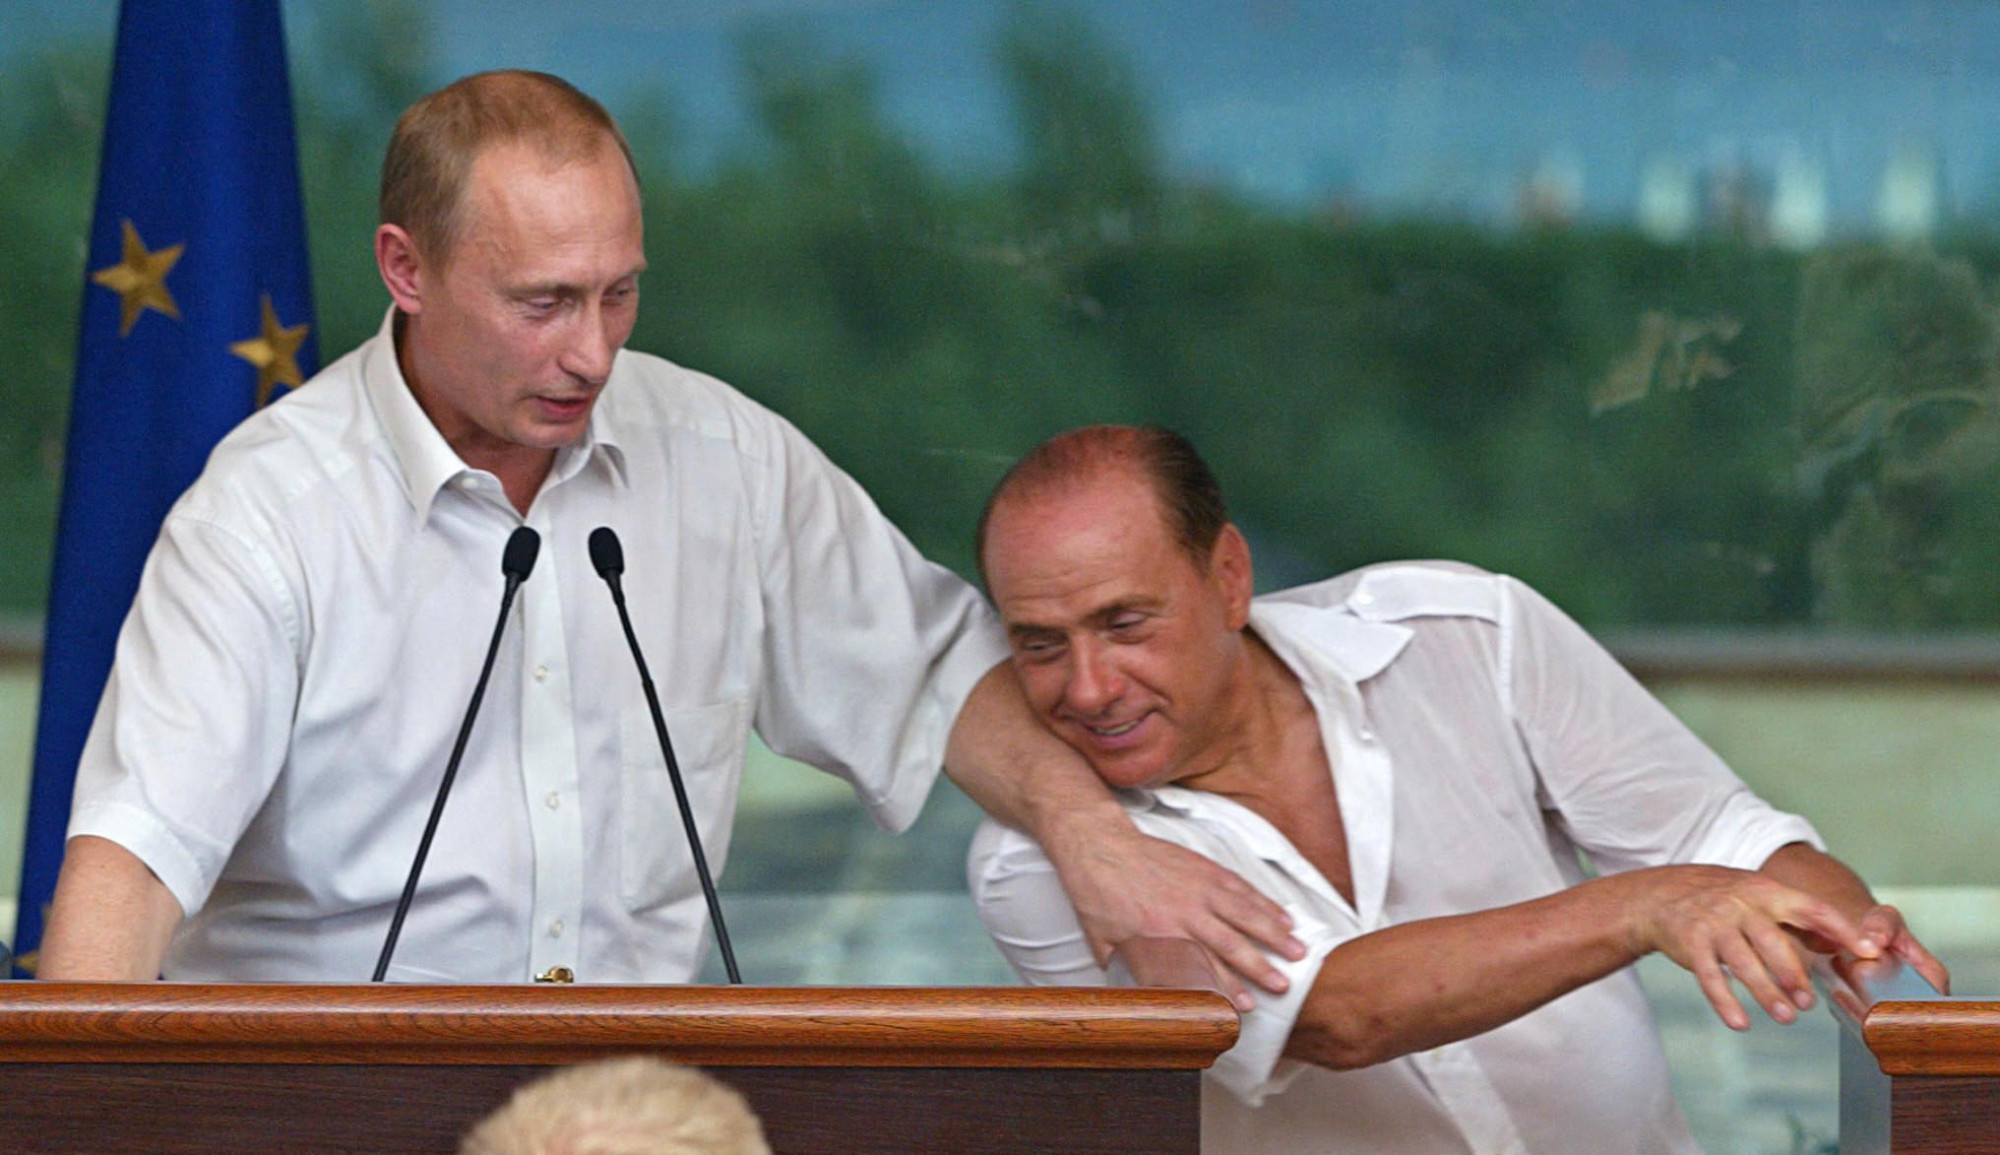 Silvio Berlusconi arról magyarázott a tévében, hogy Putyin barátját csak belekényszerítették a háborúba